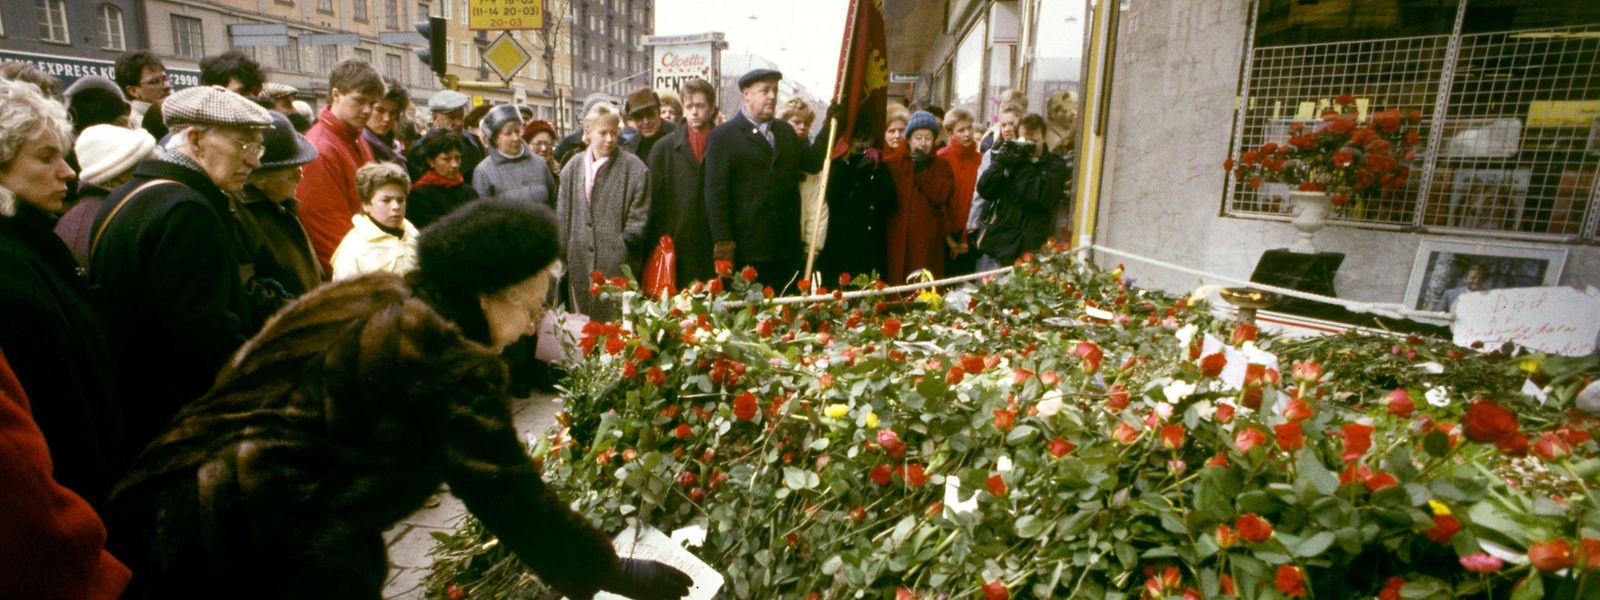 1986: Trauernde legen Blumen am Tatort nieder.